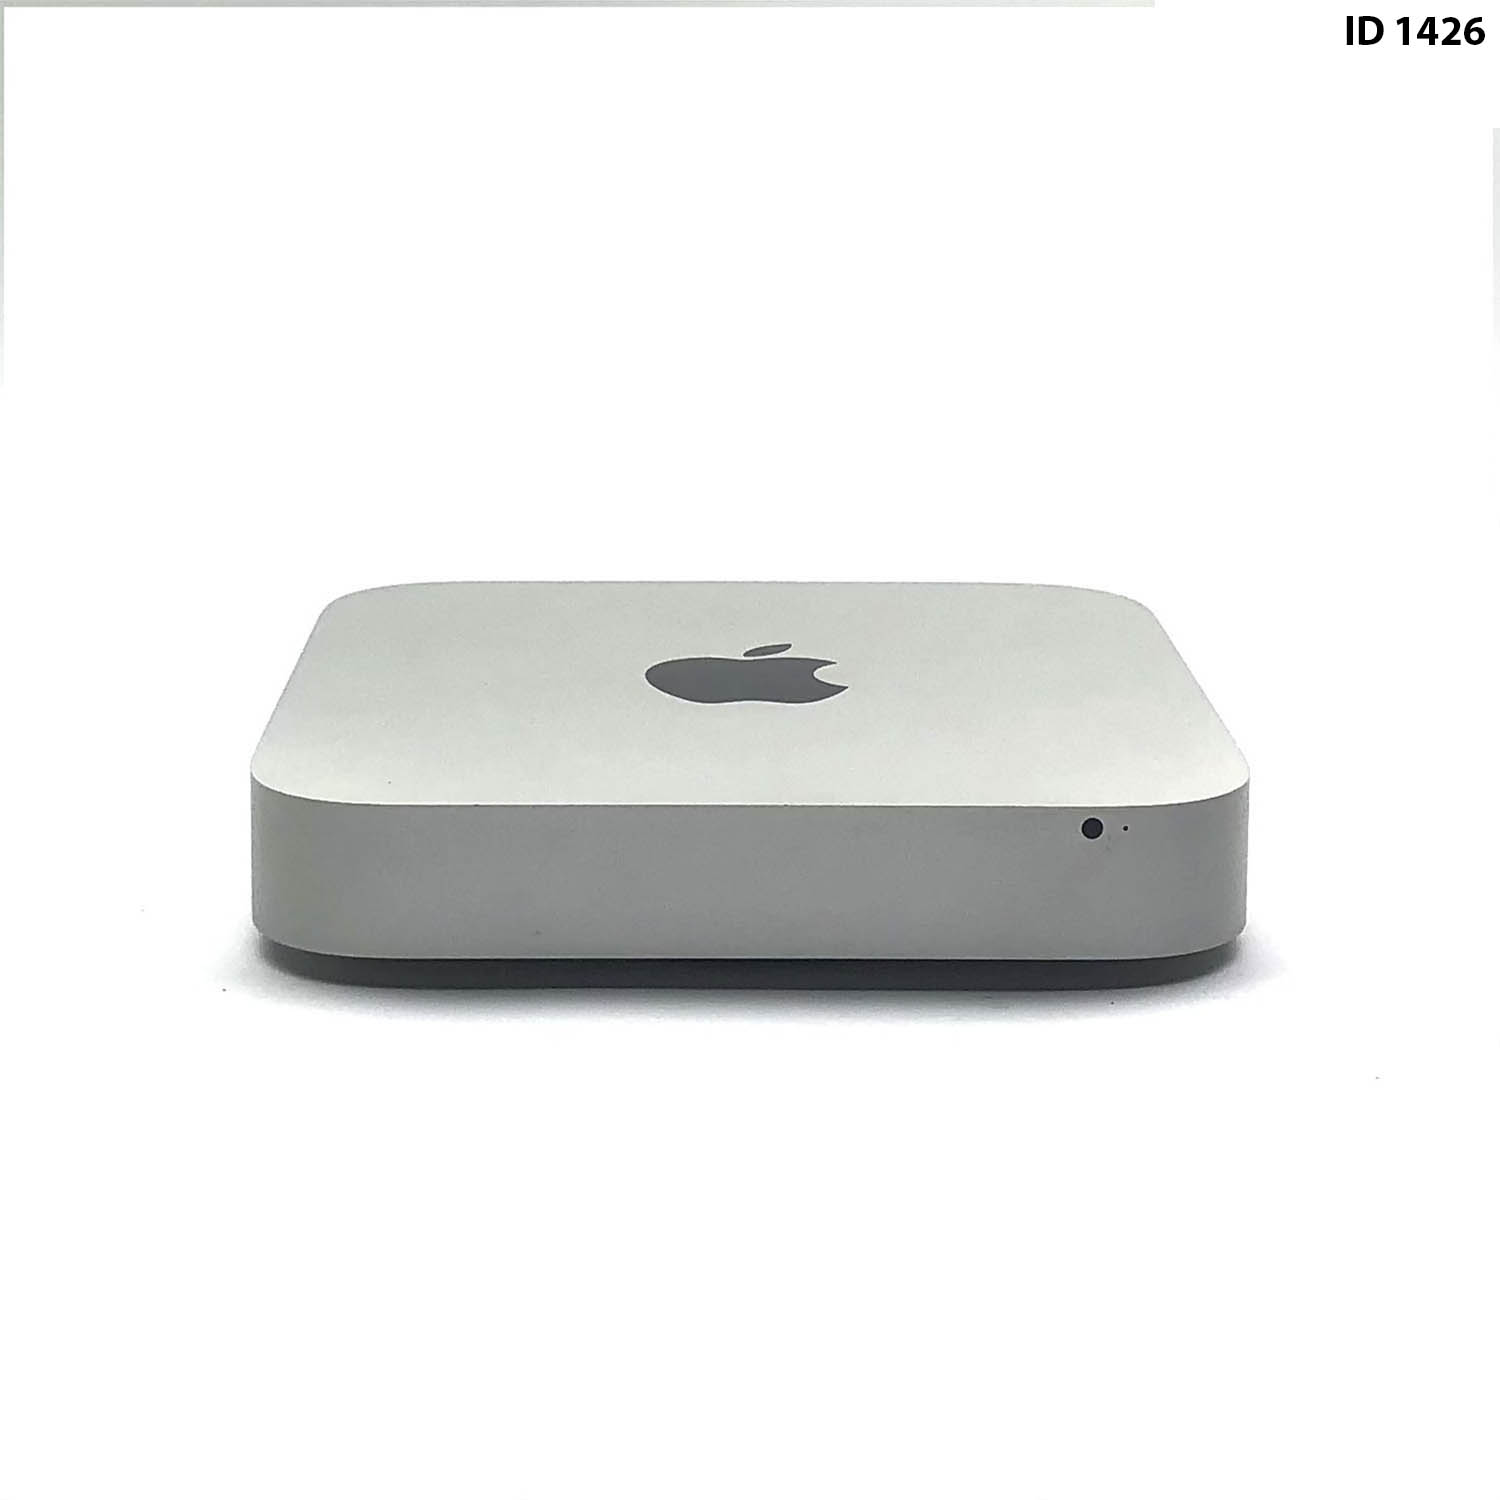 Mac Mini i5 2.5Ghz 4GB 500GB HD MD387LL/A  Seminovo